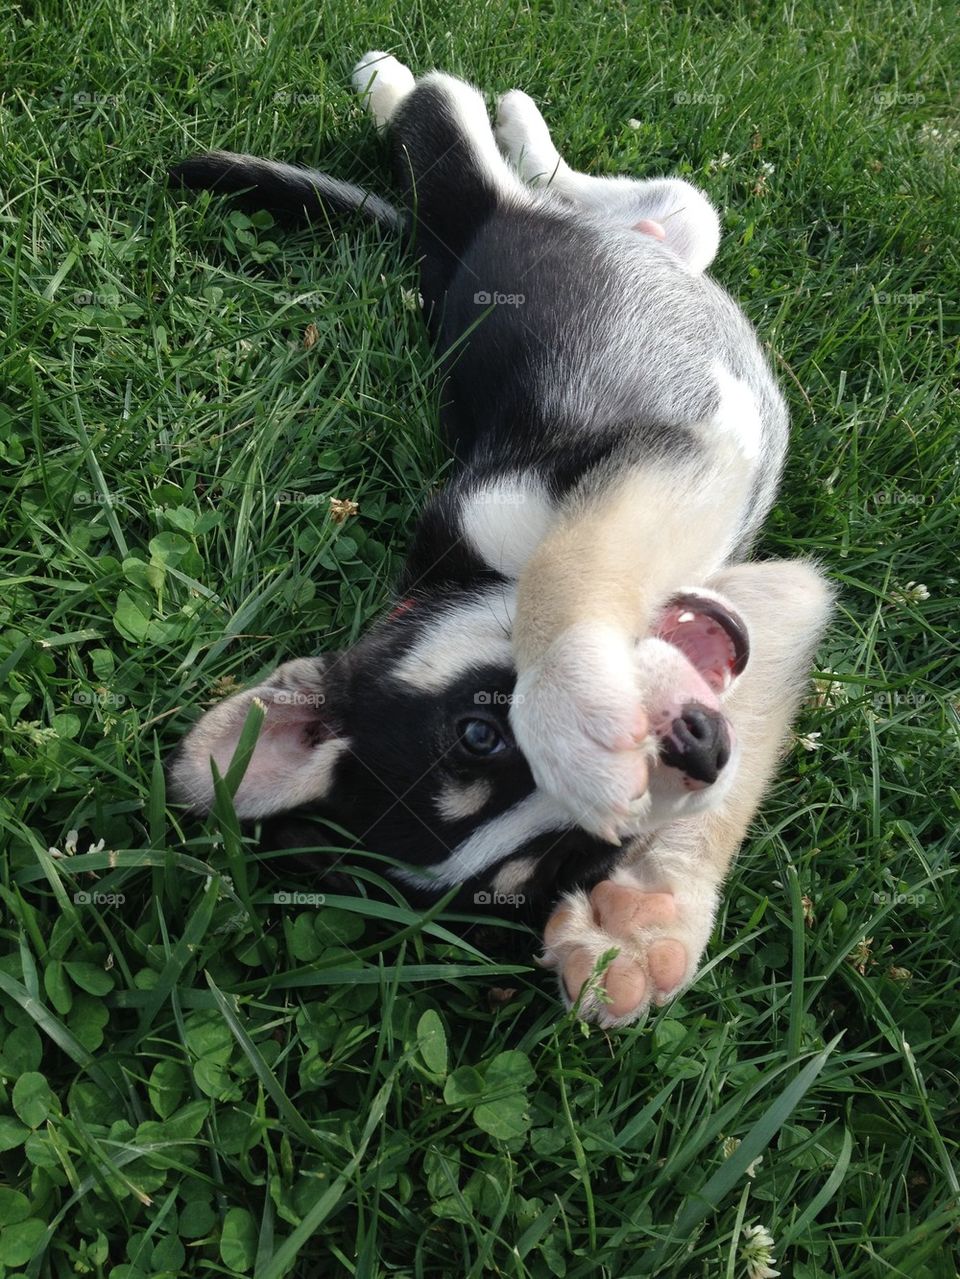 Playful pup